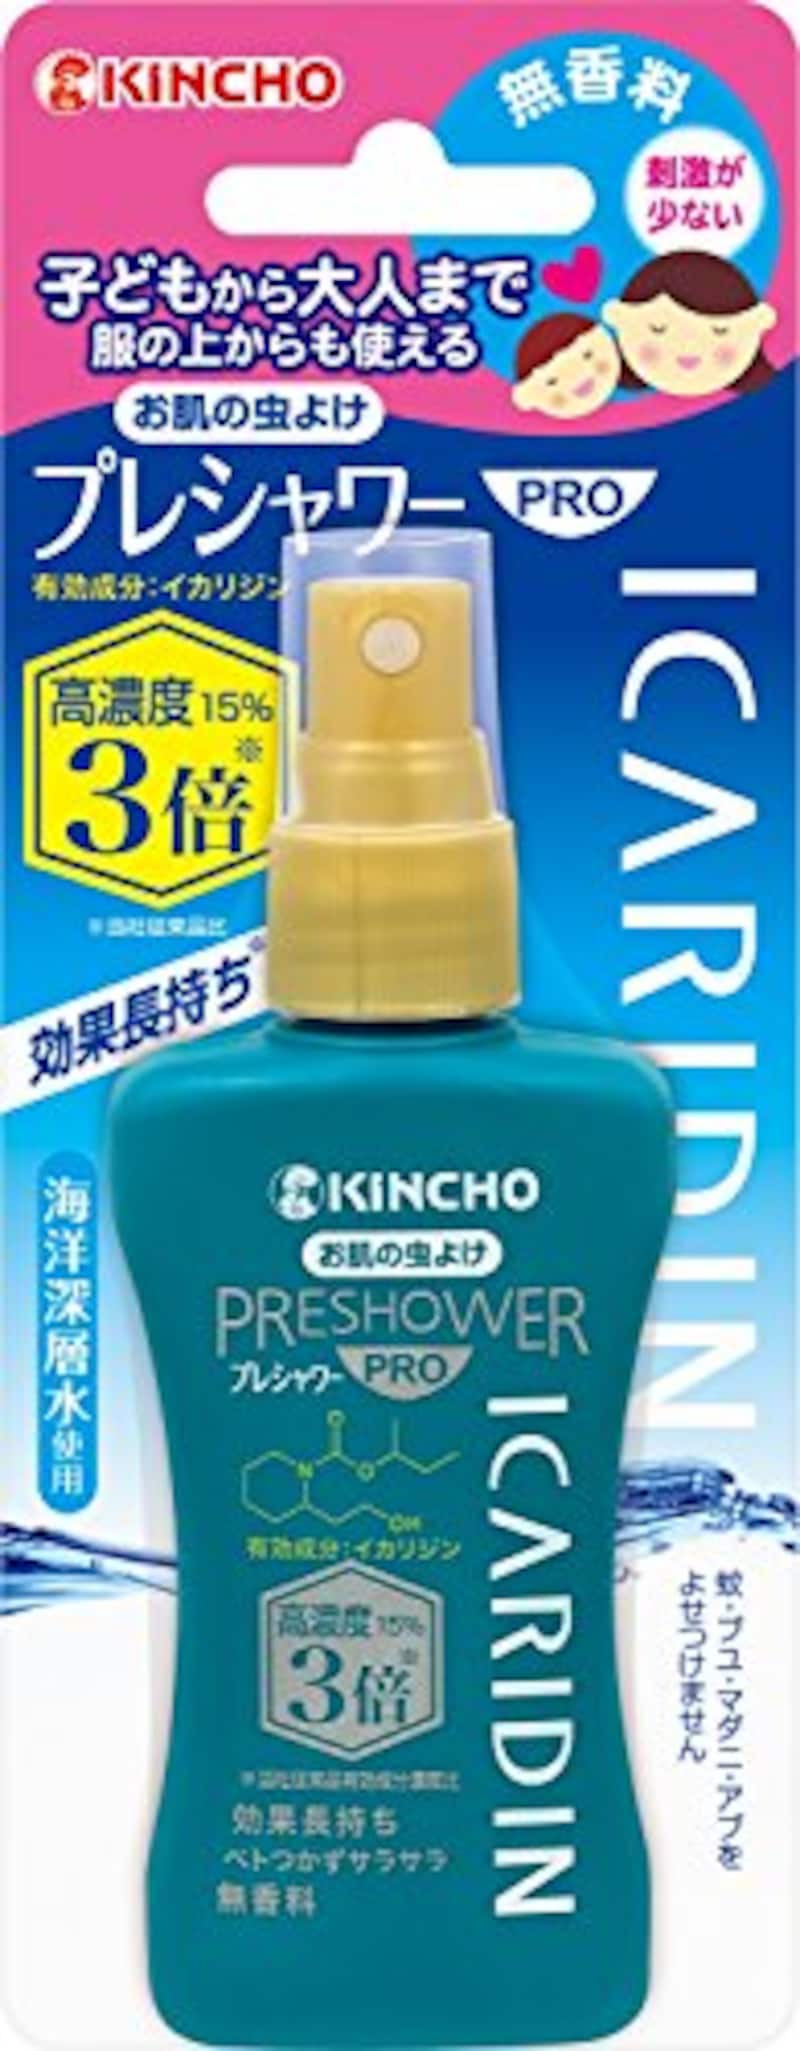 KINCHO（キンチョー）,お肌の虫よけ プレシャワーPRO イカリジン